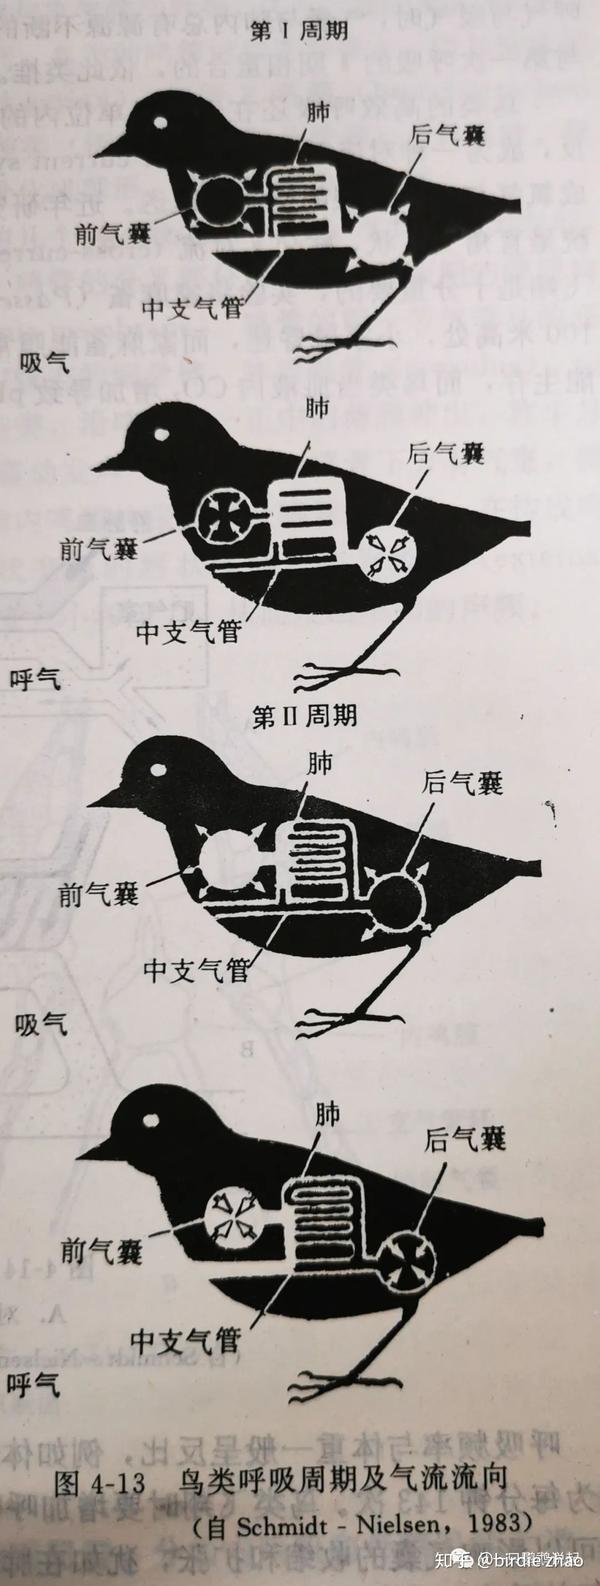 鸟类基础知识(2)呼吸系统与发声器官